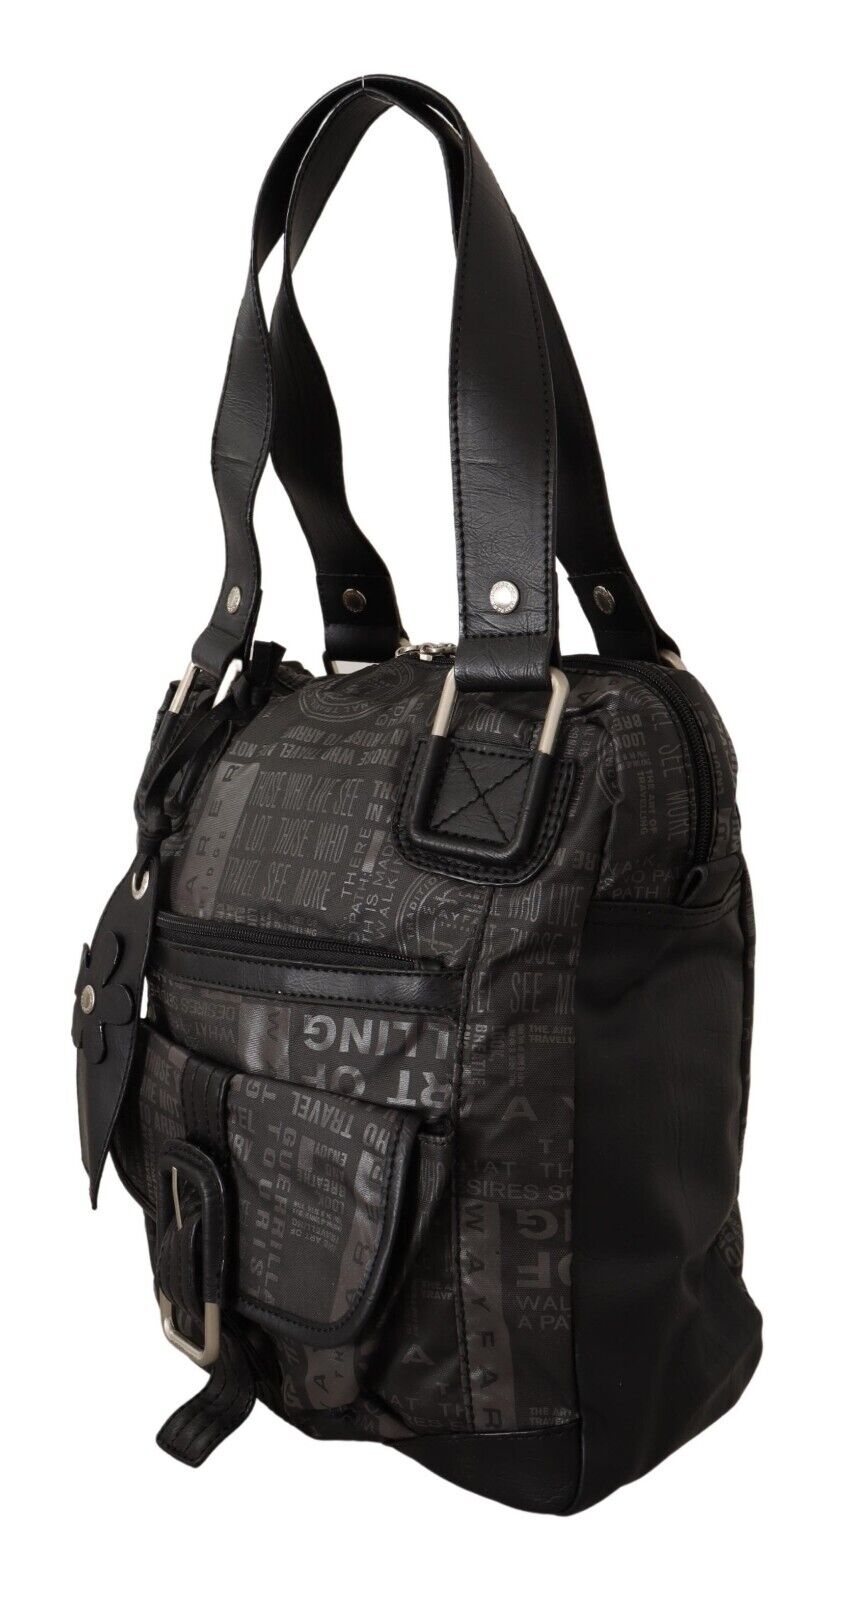 WAYFARER Black Printed Logo Shoulder Handbag Purse Bag - Fizigo